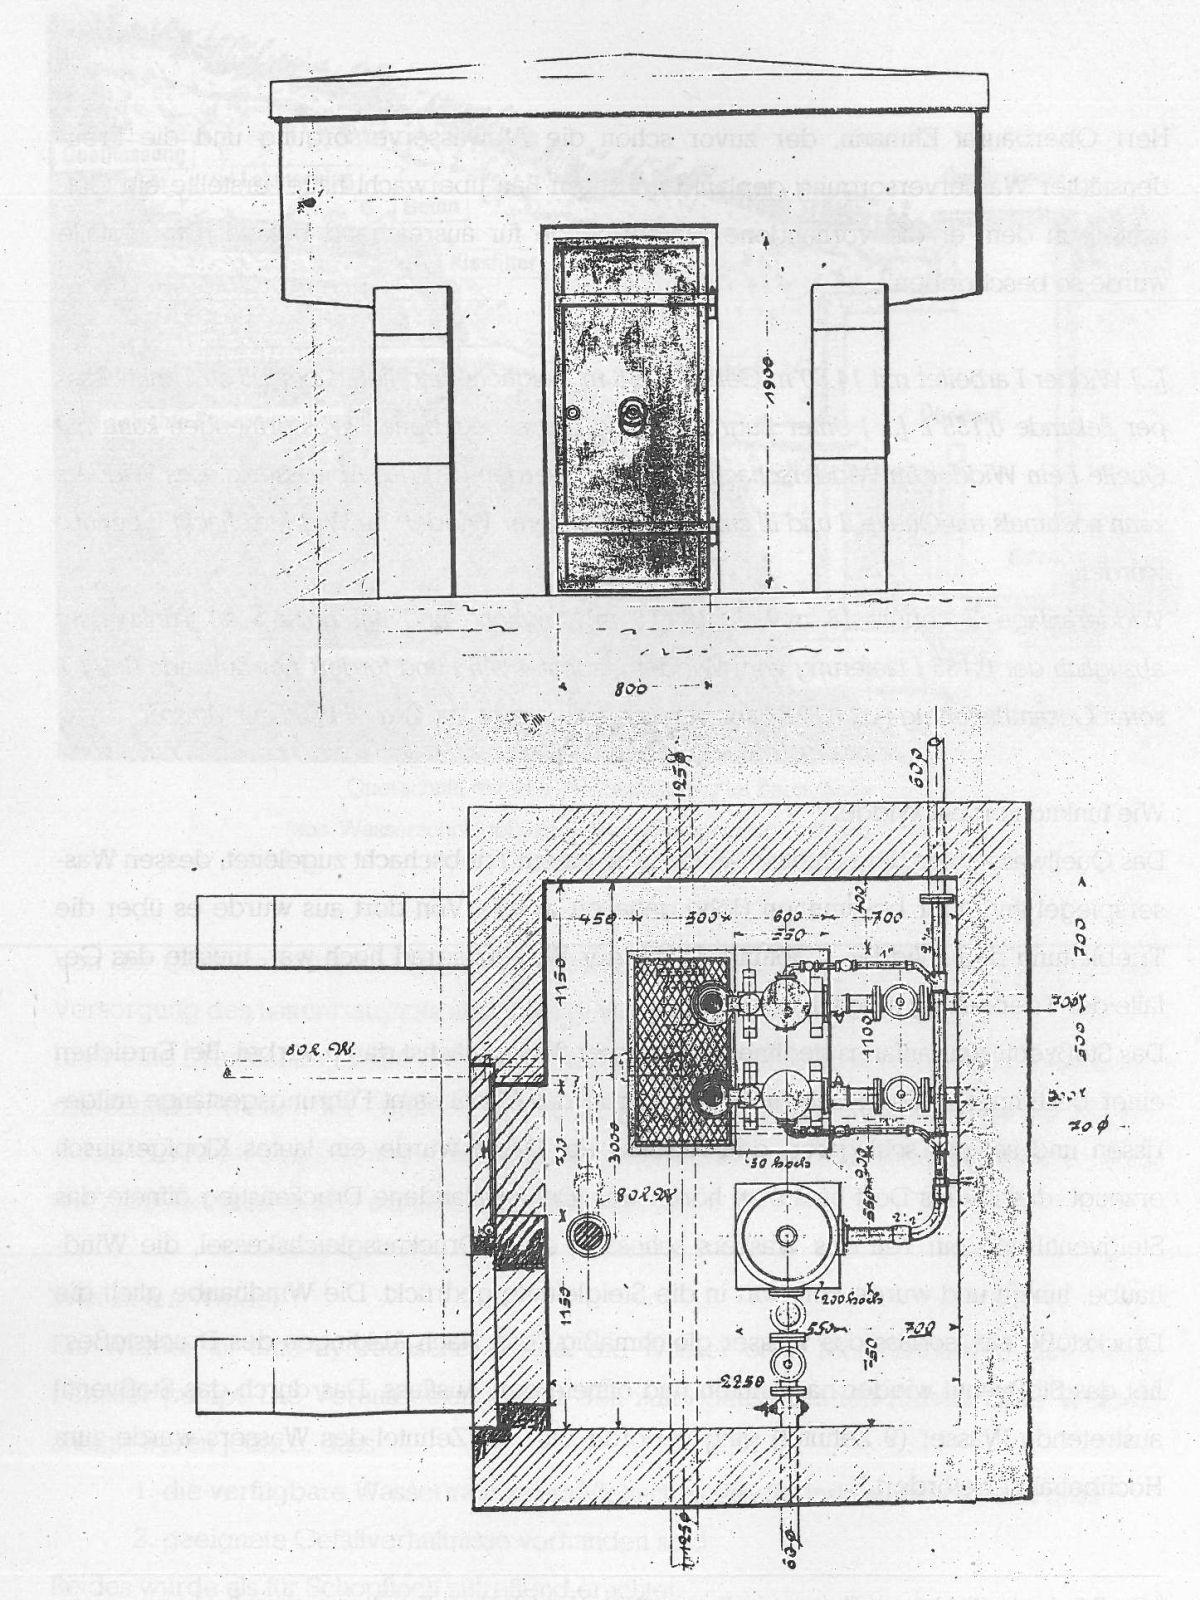  Schopflocher Skizzen Kopie aus den Planungsunterlagen von 1901: Der Widderschacht 1: Eingang und Grundriss - Bild wird mit einem Klick vergrößert 